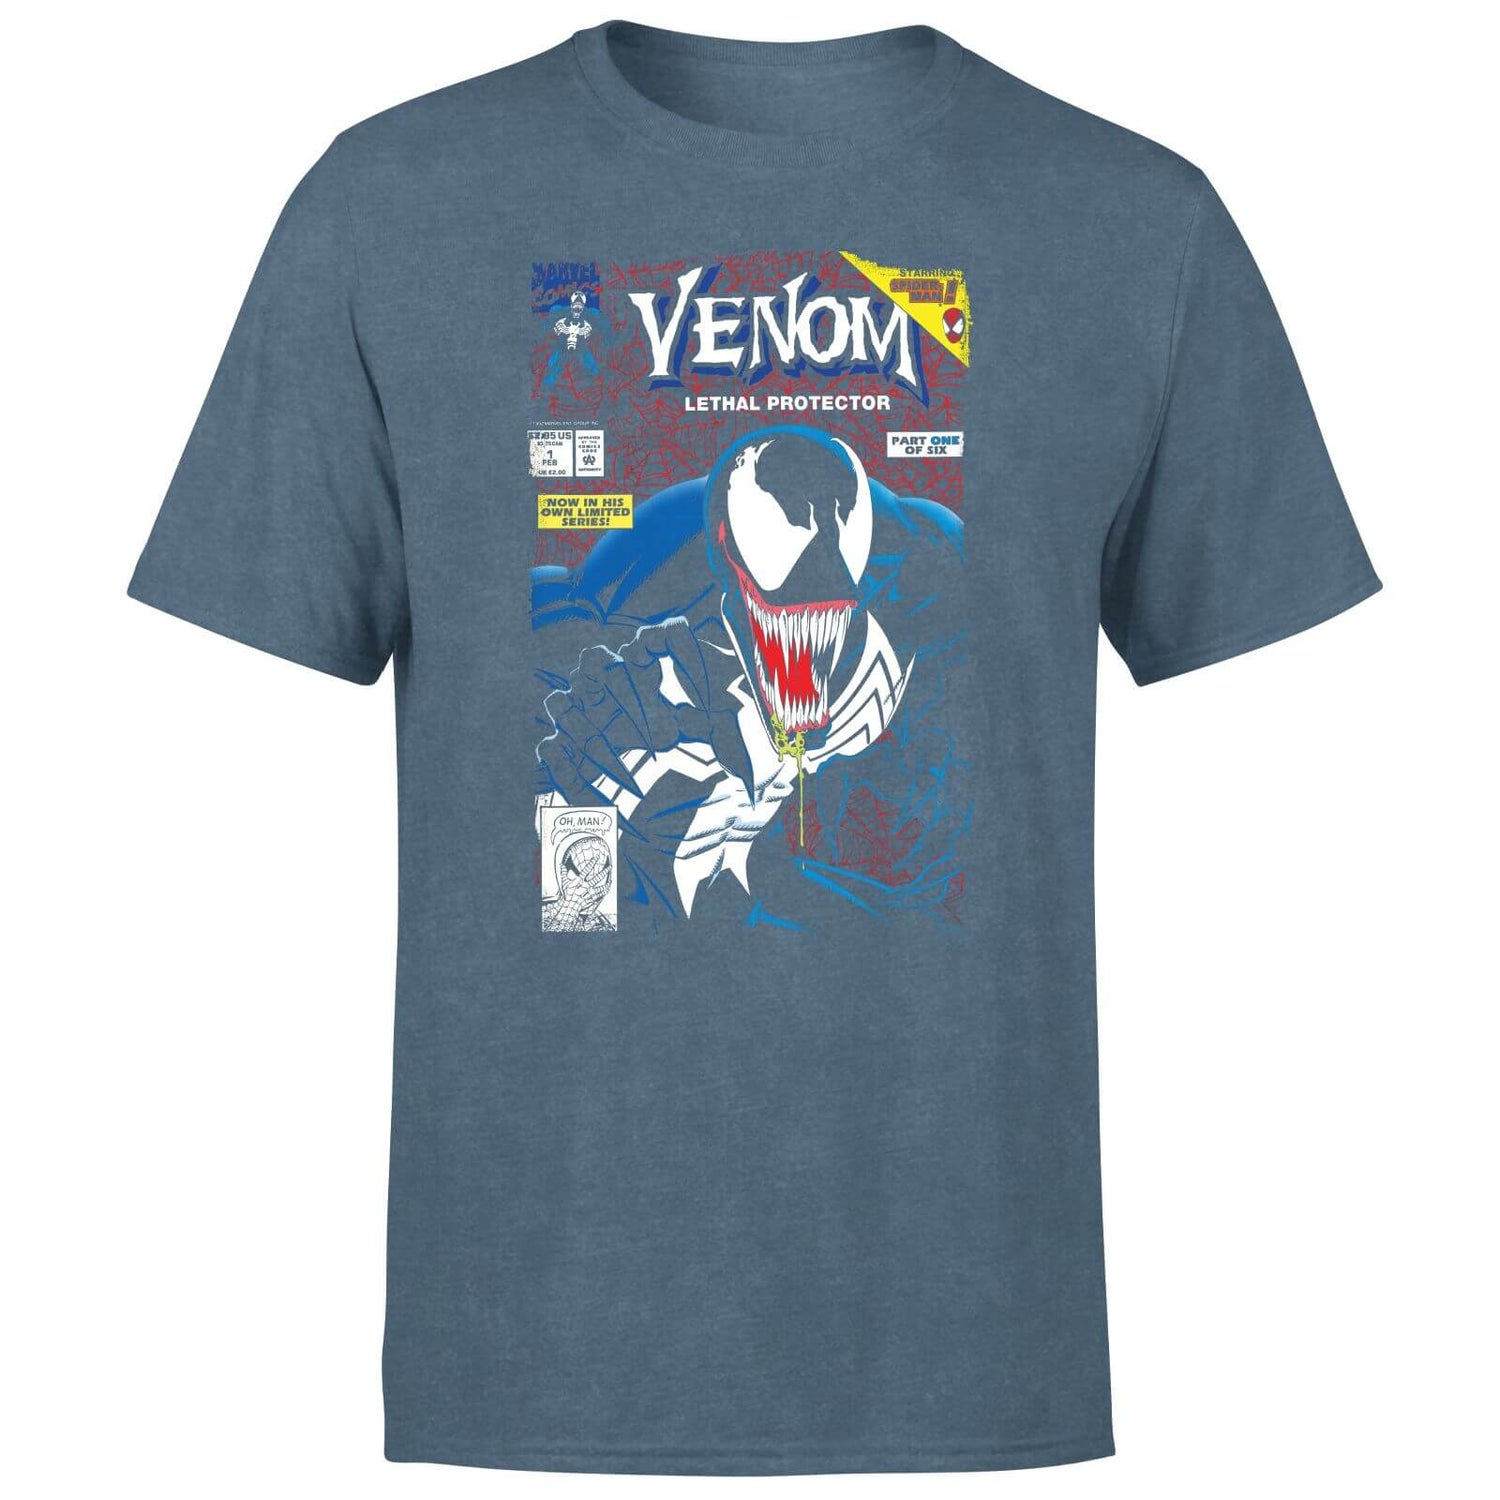 Venom Lethal Protector Men's T-Shirt - Navy Acid Wash